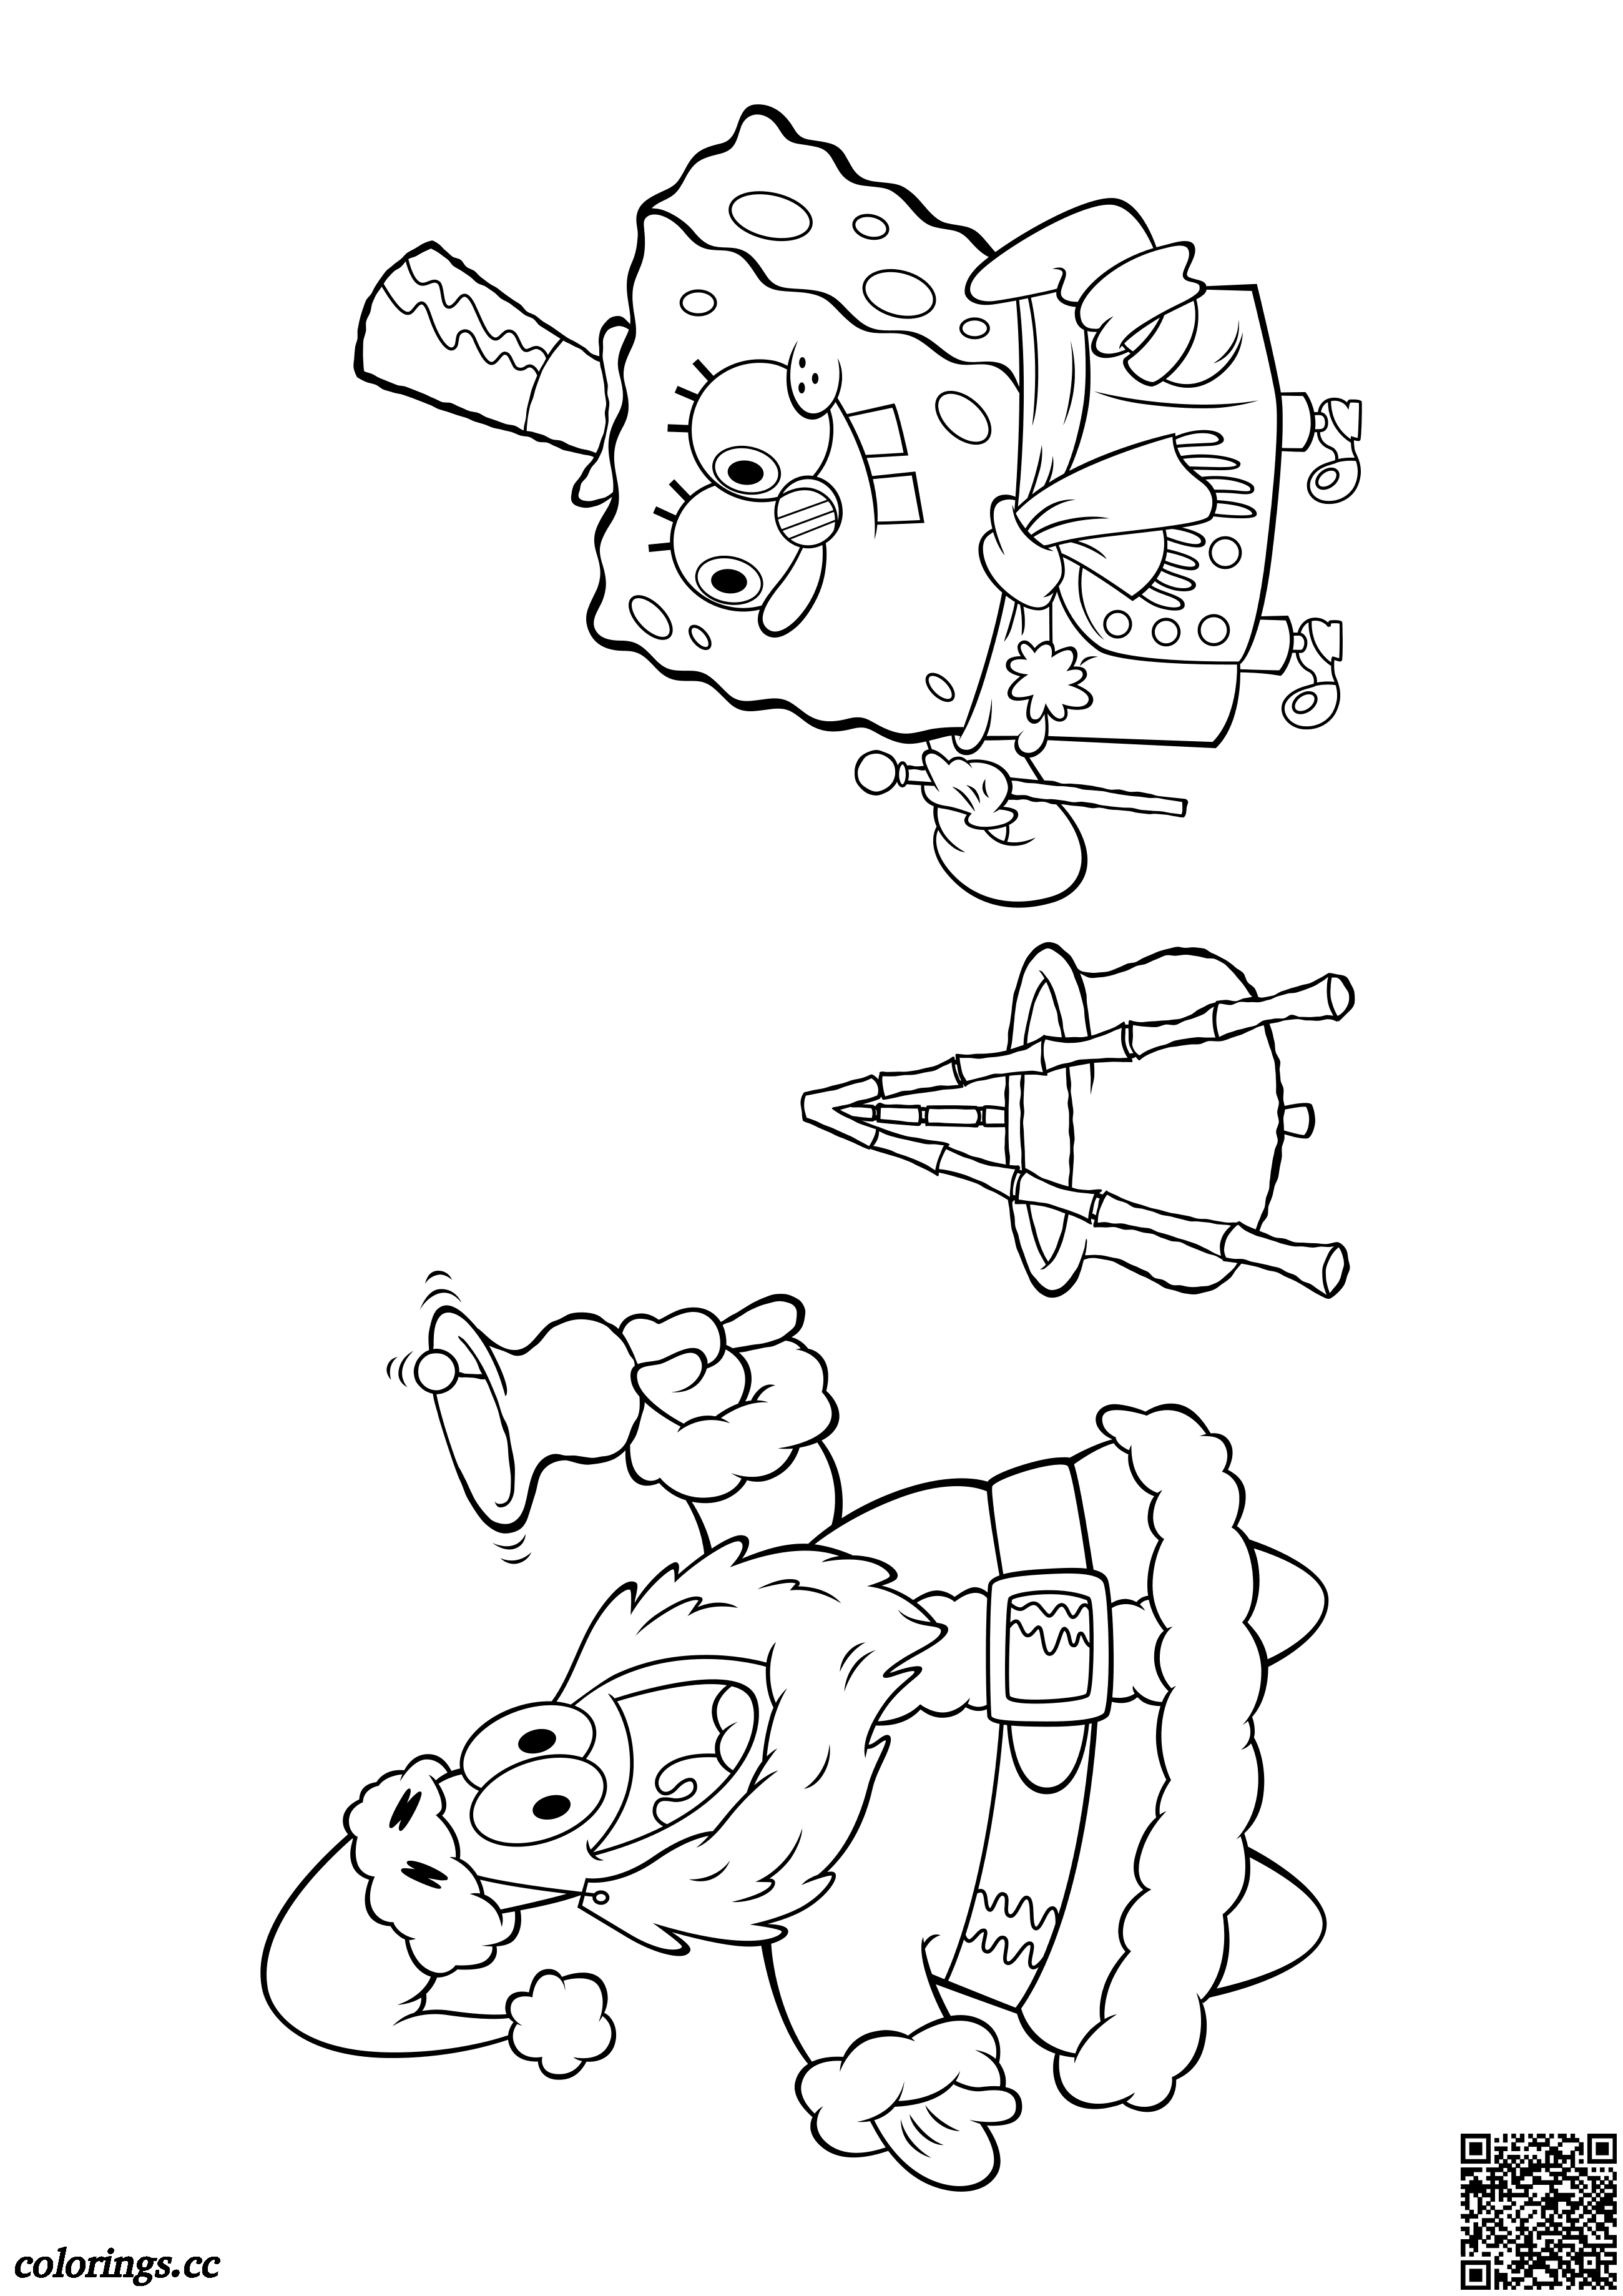 Patrick Star og SpongeBob til jul tegninger til farvelægning, SvampeBob